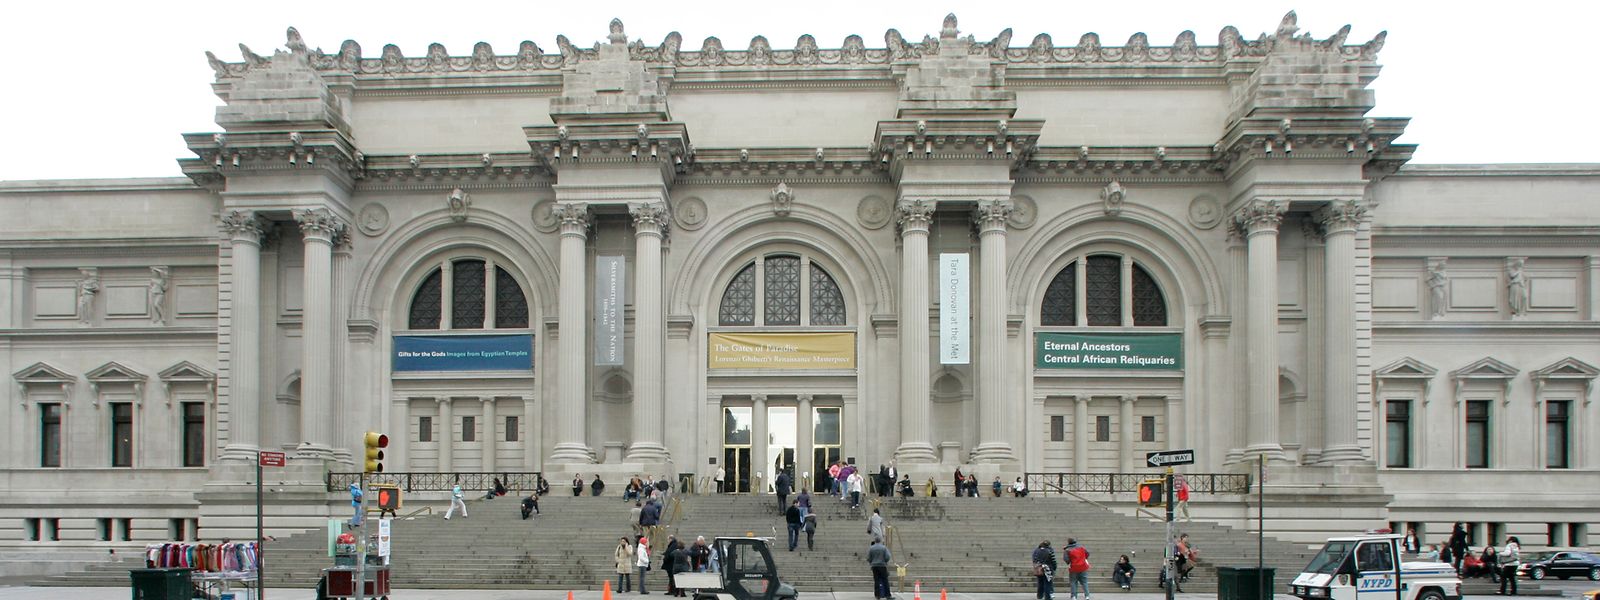 Das Metropolitan Museum of Art muss sein 150-jähriges Bestehen Corona bedingt im Netz feiern.